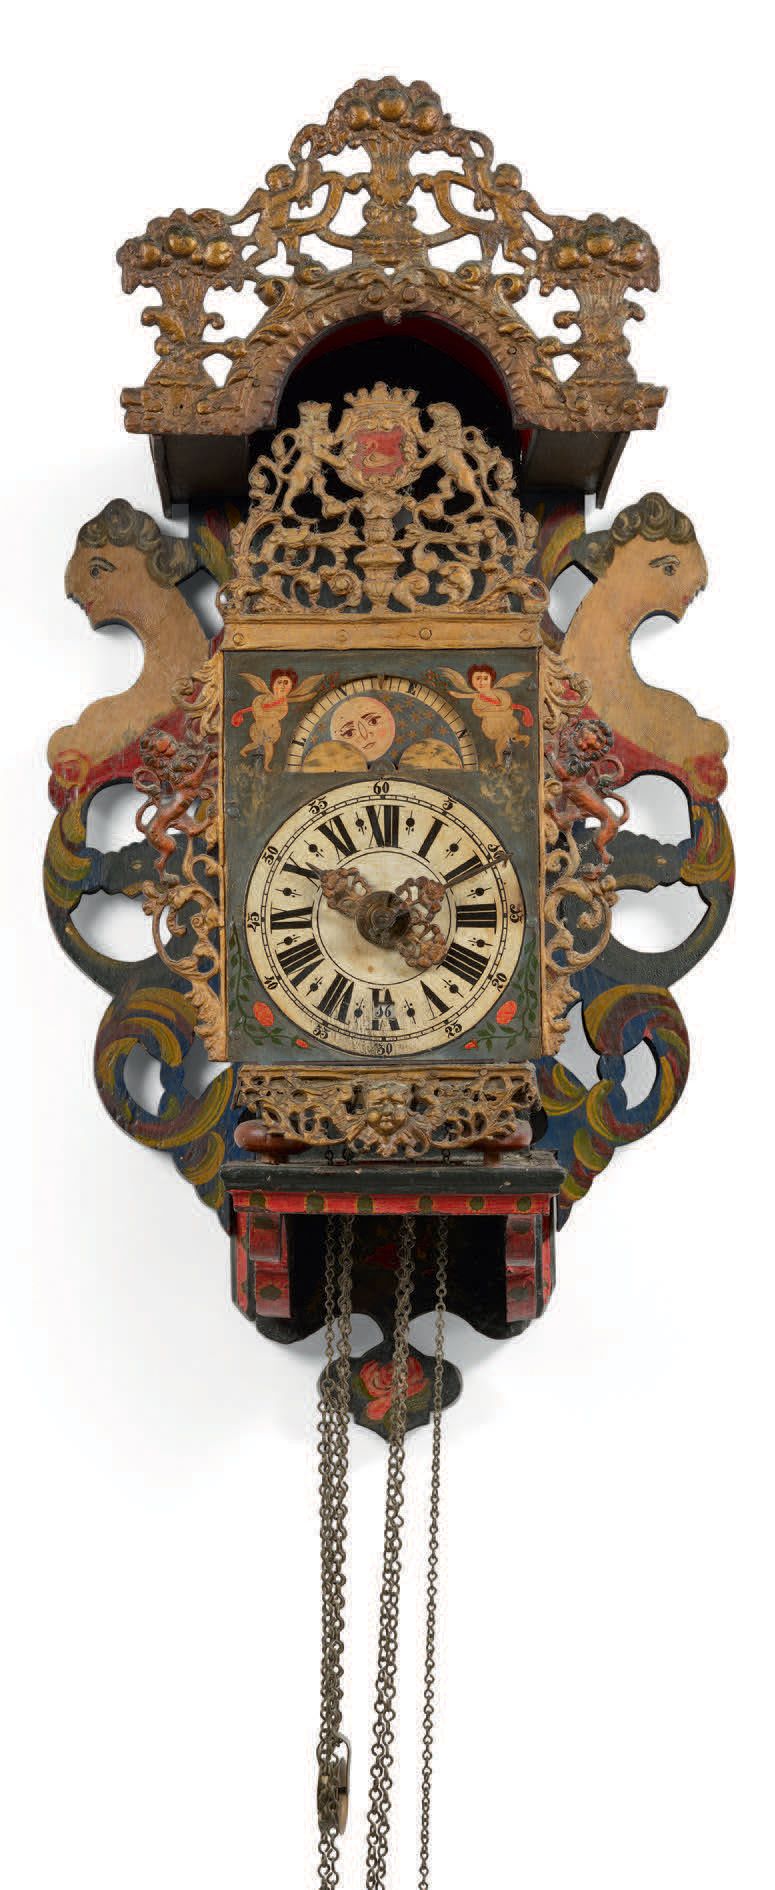 EUROPE DU NORD - Début XVIIIe siècle Horloge murale
Caisse en bois peint avec de&hellip;